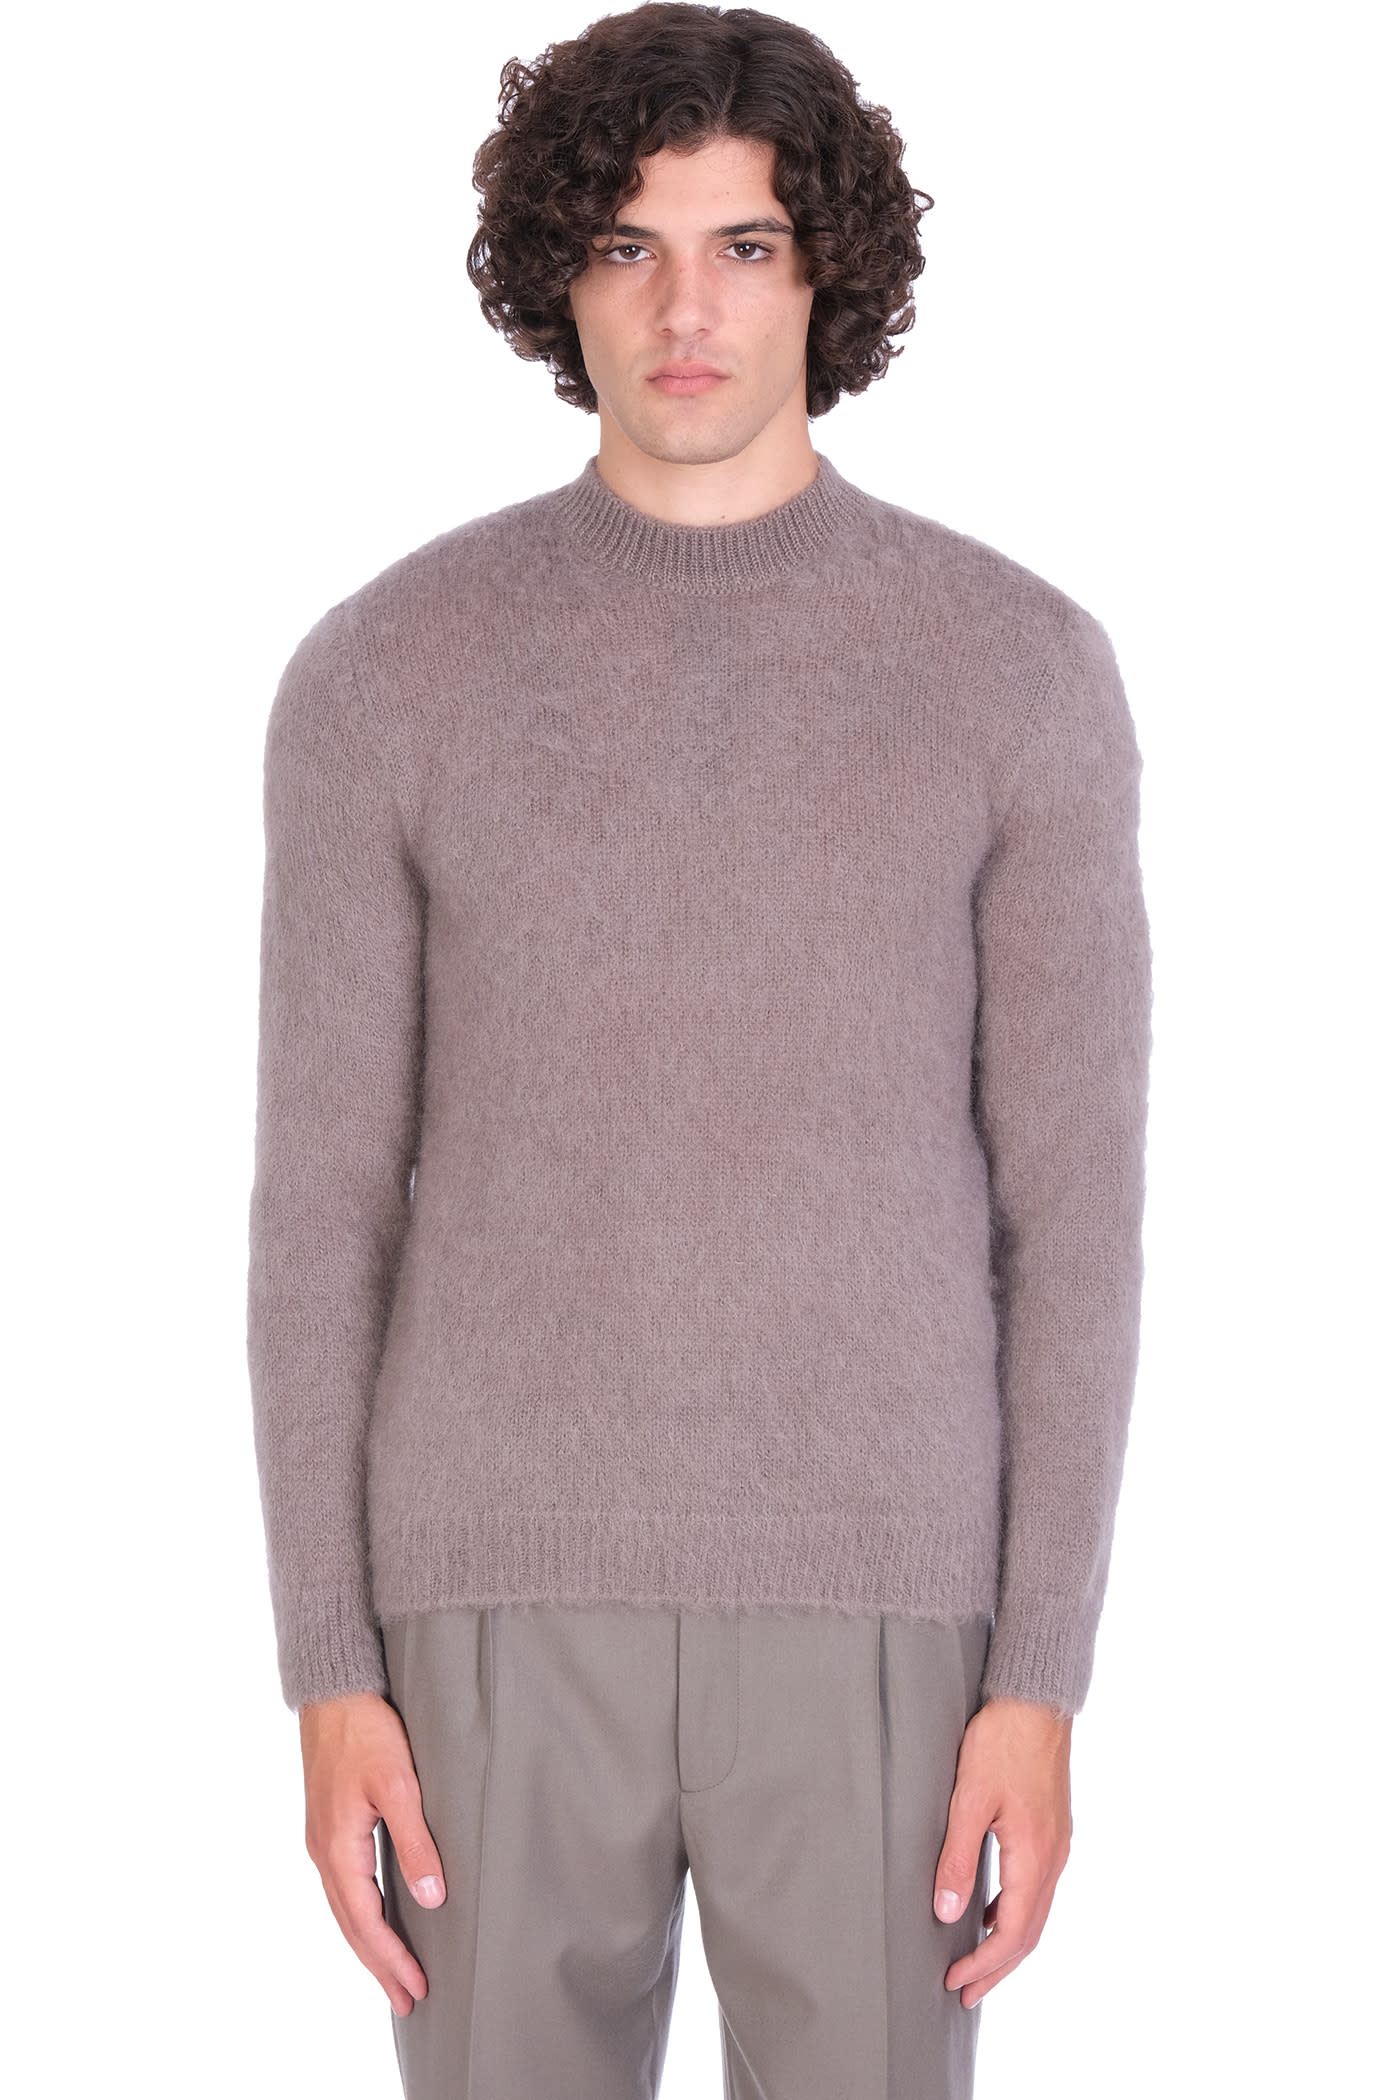 Giorgio Armani Knitwear In Grey Wool